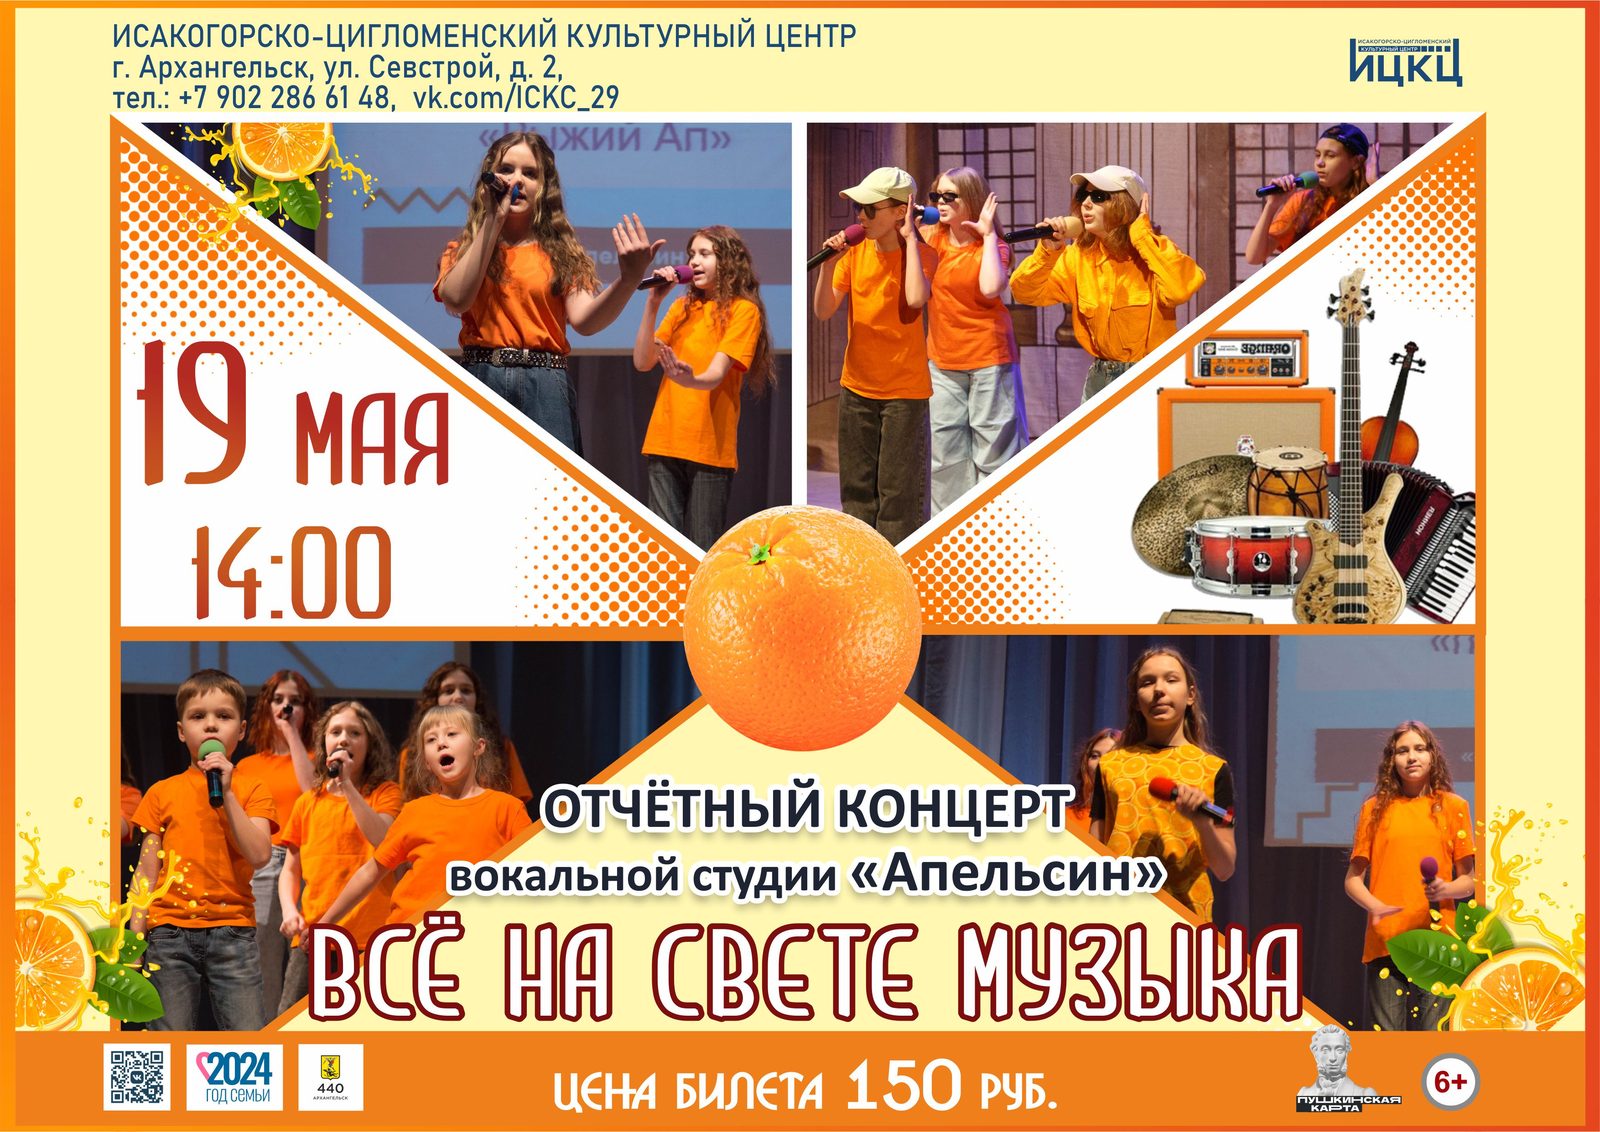 Отчётный концерт вокальной студии «Апельсин» «Всё на свете музыка»